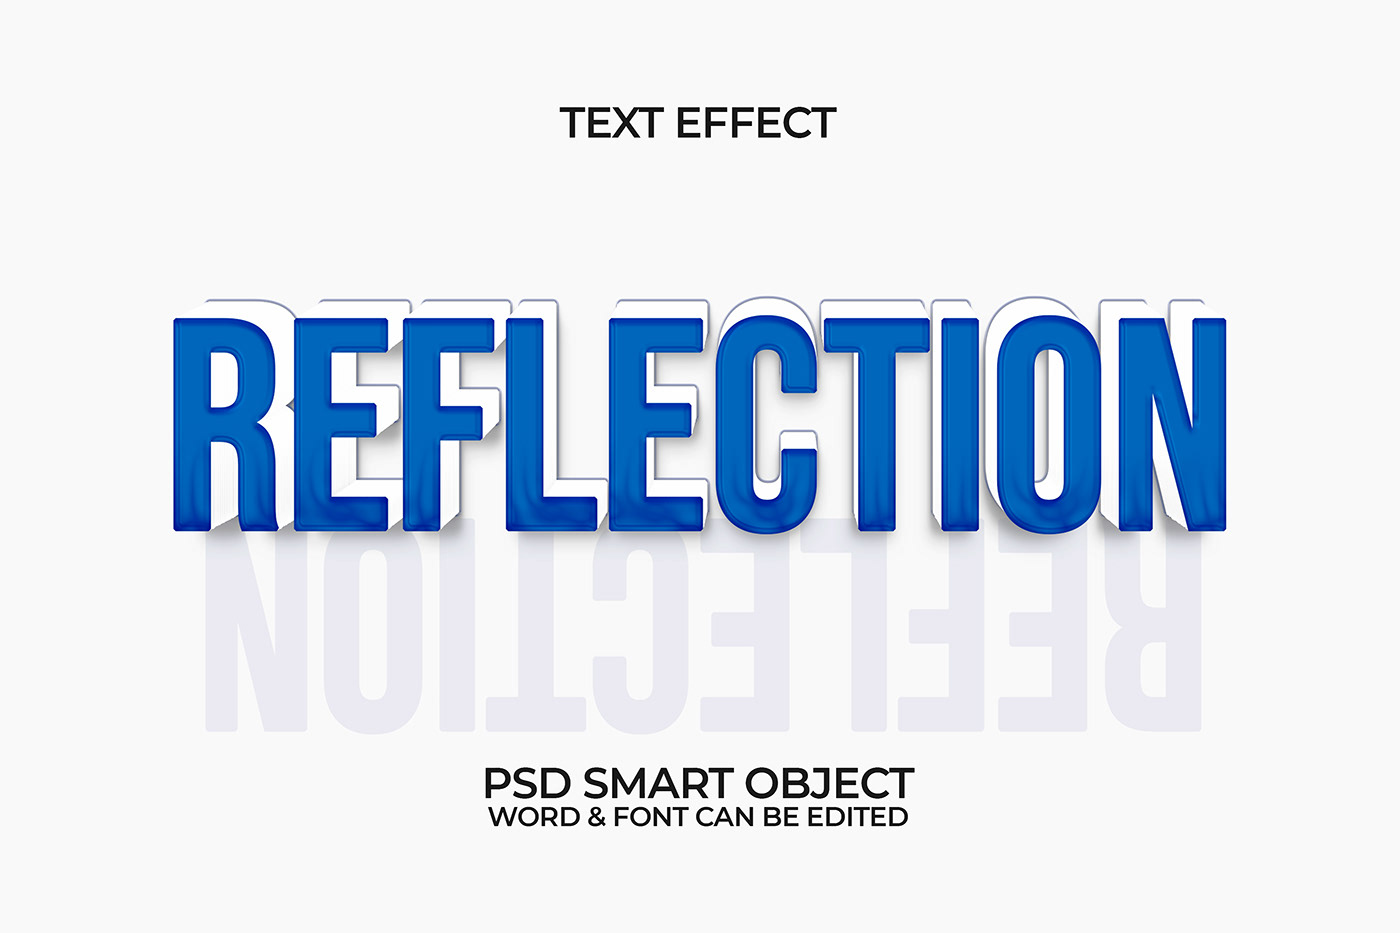 3d design 3D Font 3D text 3d text effect caliography psd text effect text text design text effect word effect